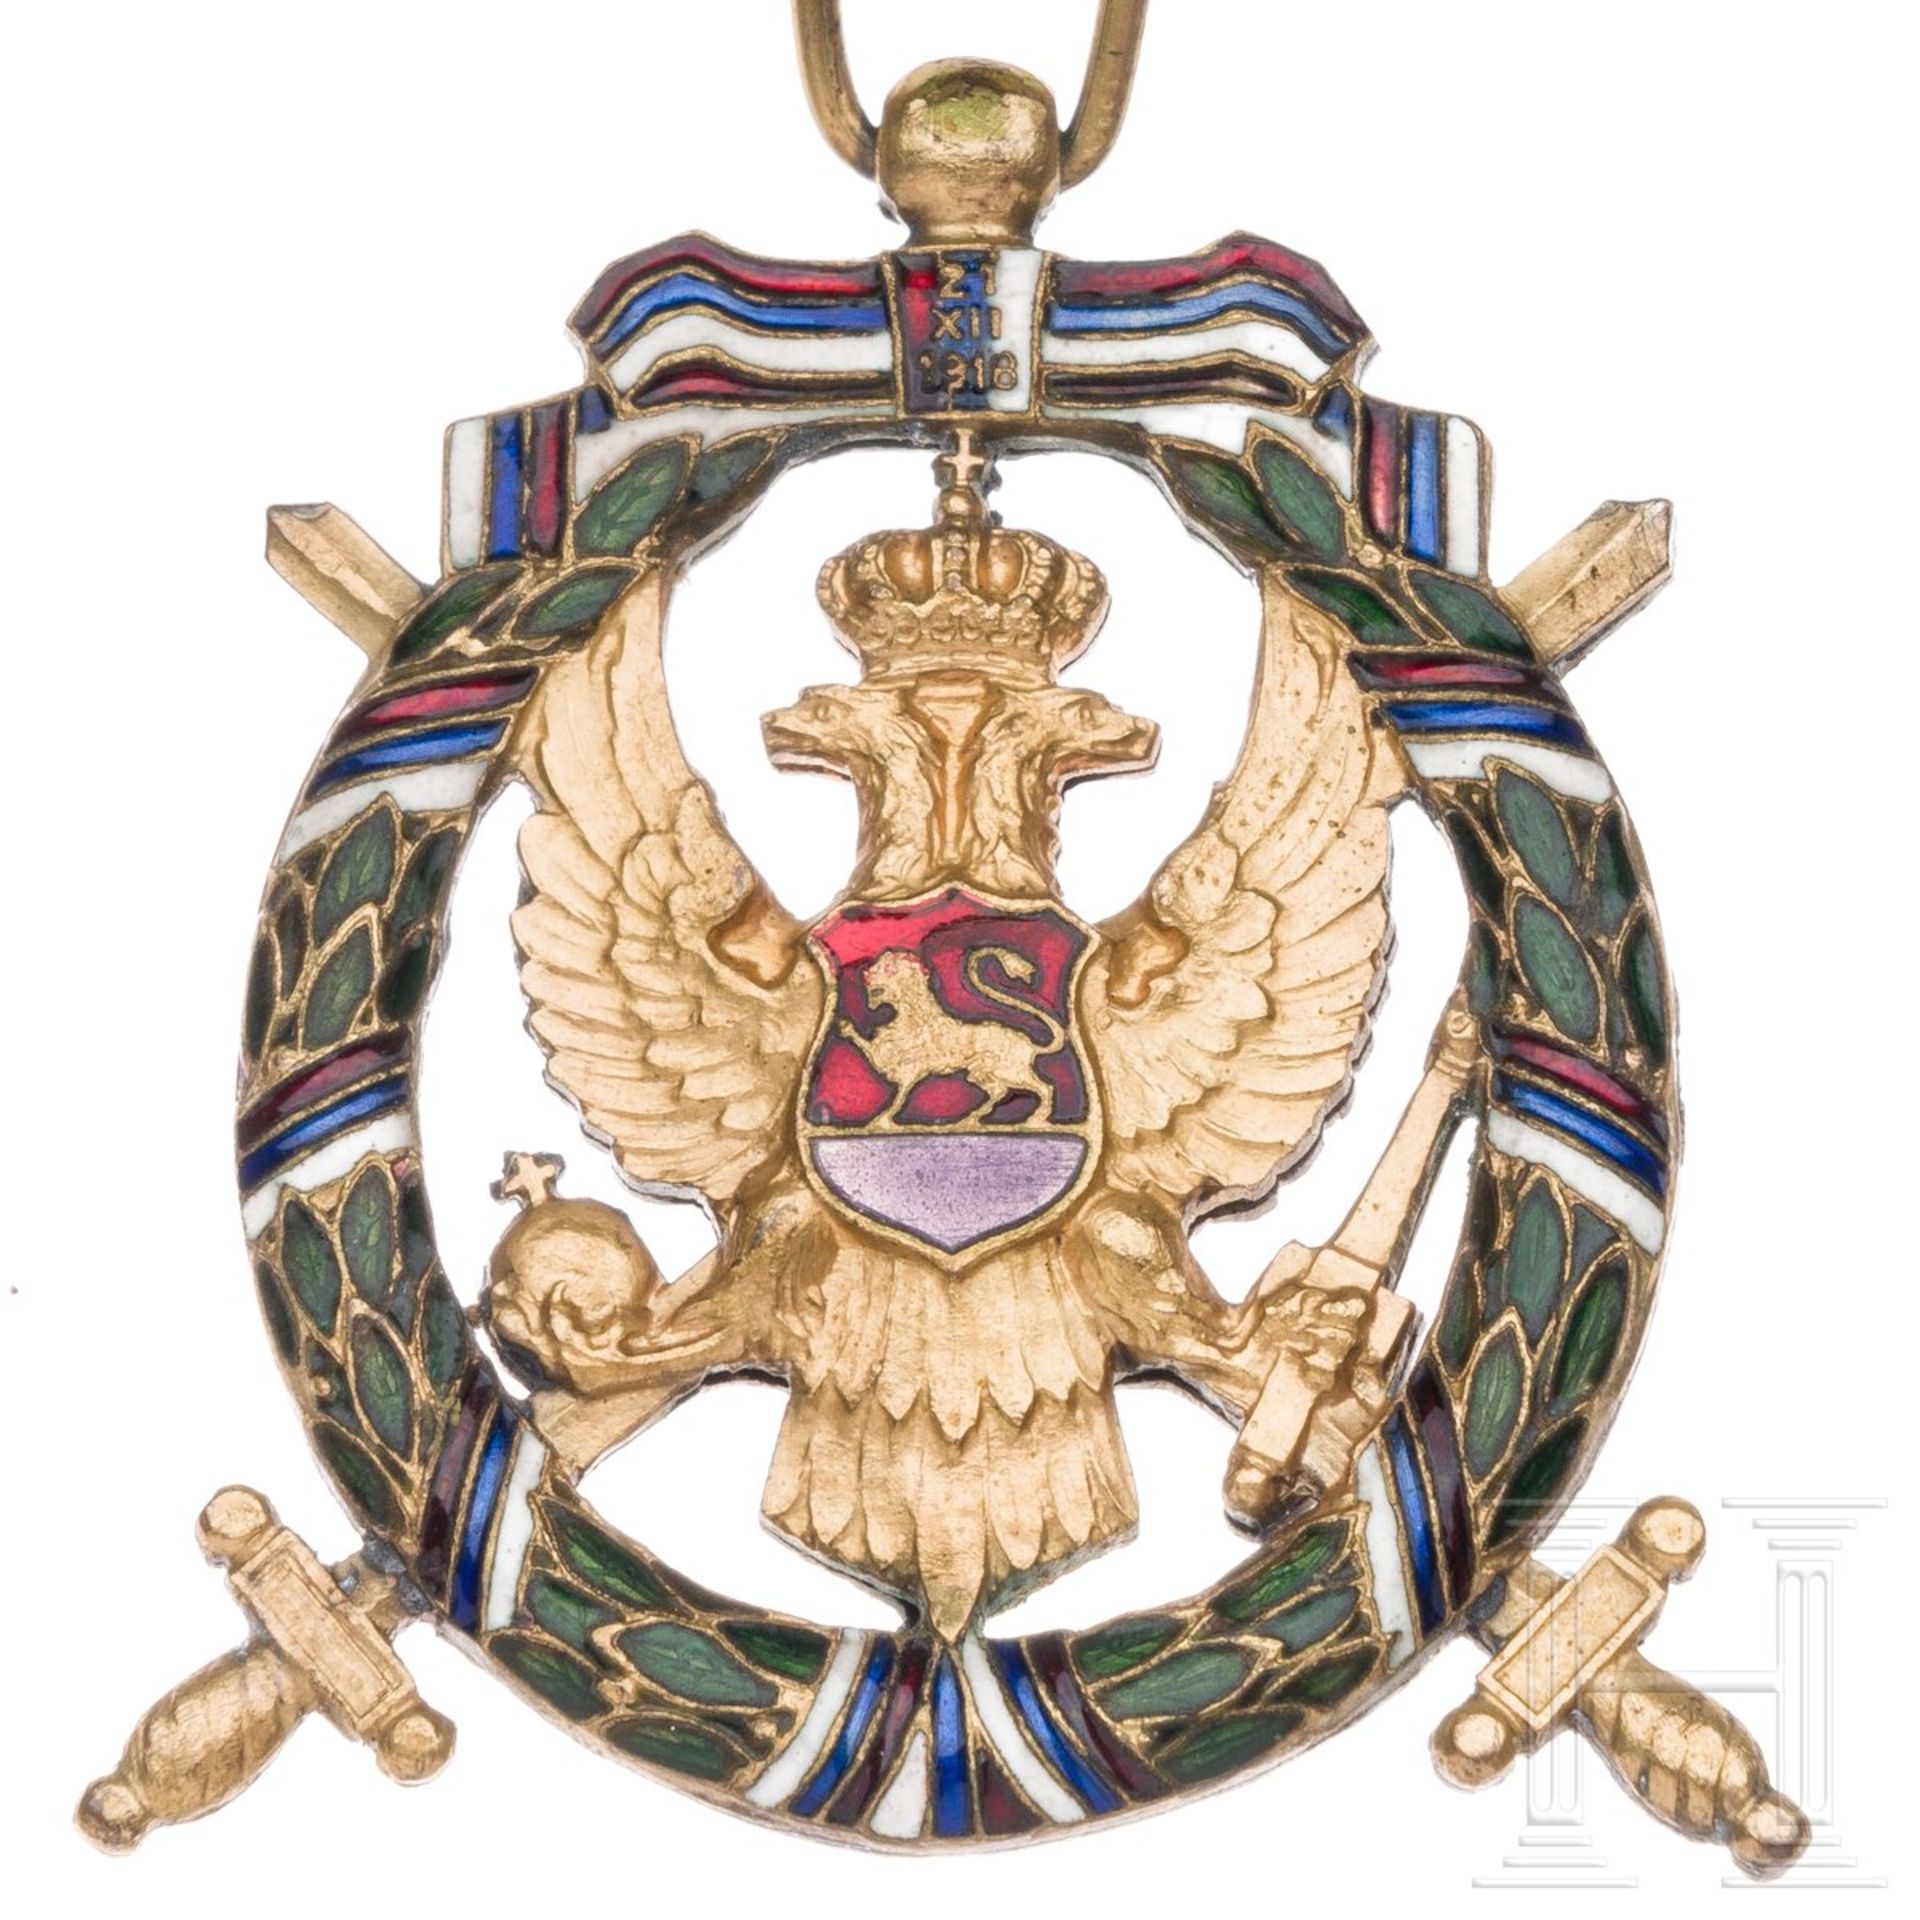 Medaille der grünen Truppen oder "Orden der Freiheit Montenegros", um 1920 - Image 3 of 4